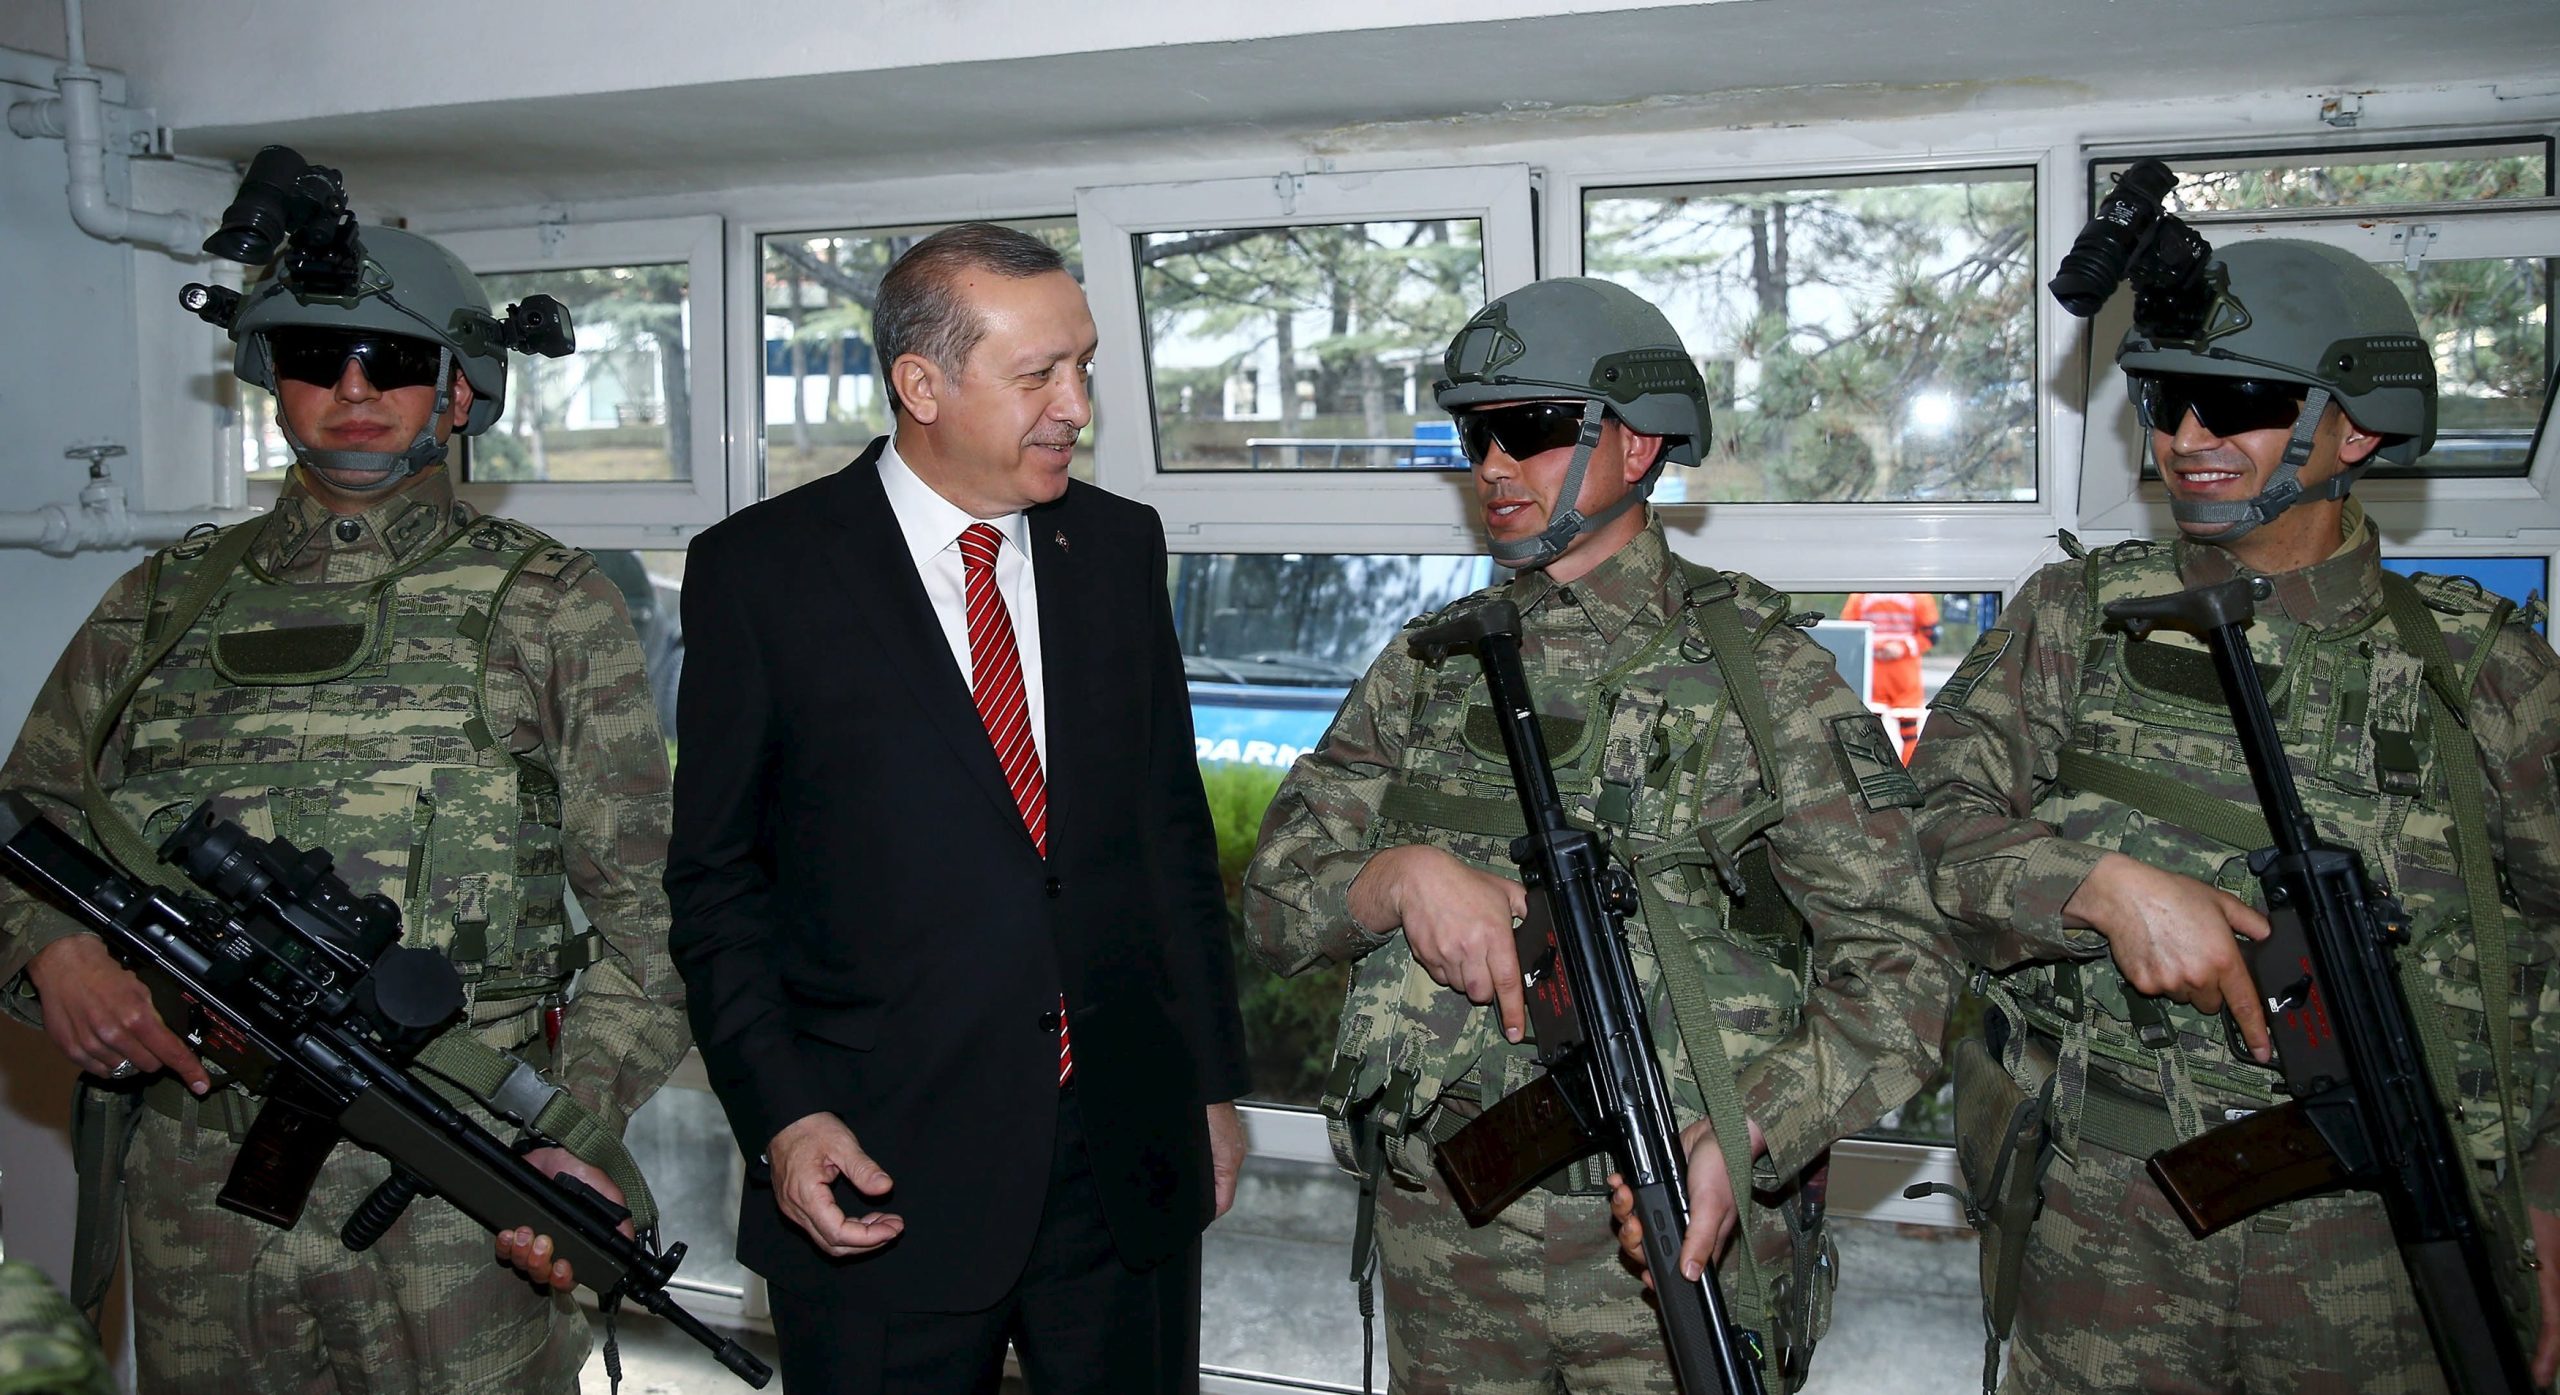 ΕΚΤΑΚΤΟ: Ο Ρ.Τ.Ερντογάν ανακοίνωσε συμμαχία Τουρκίας-Ιράν και κοινή εισβολή στις κουρδικές περιοχές της Συρίας!